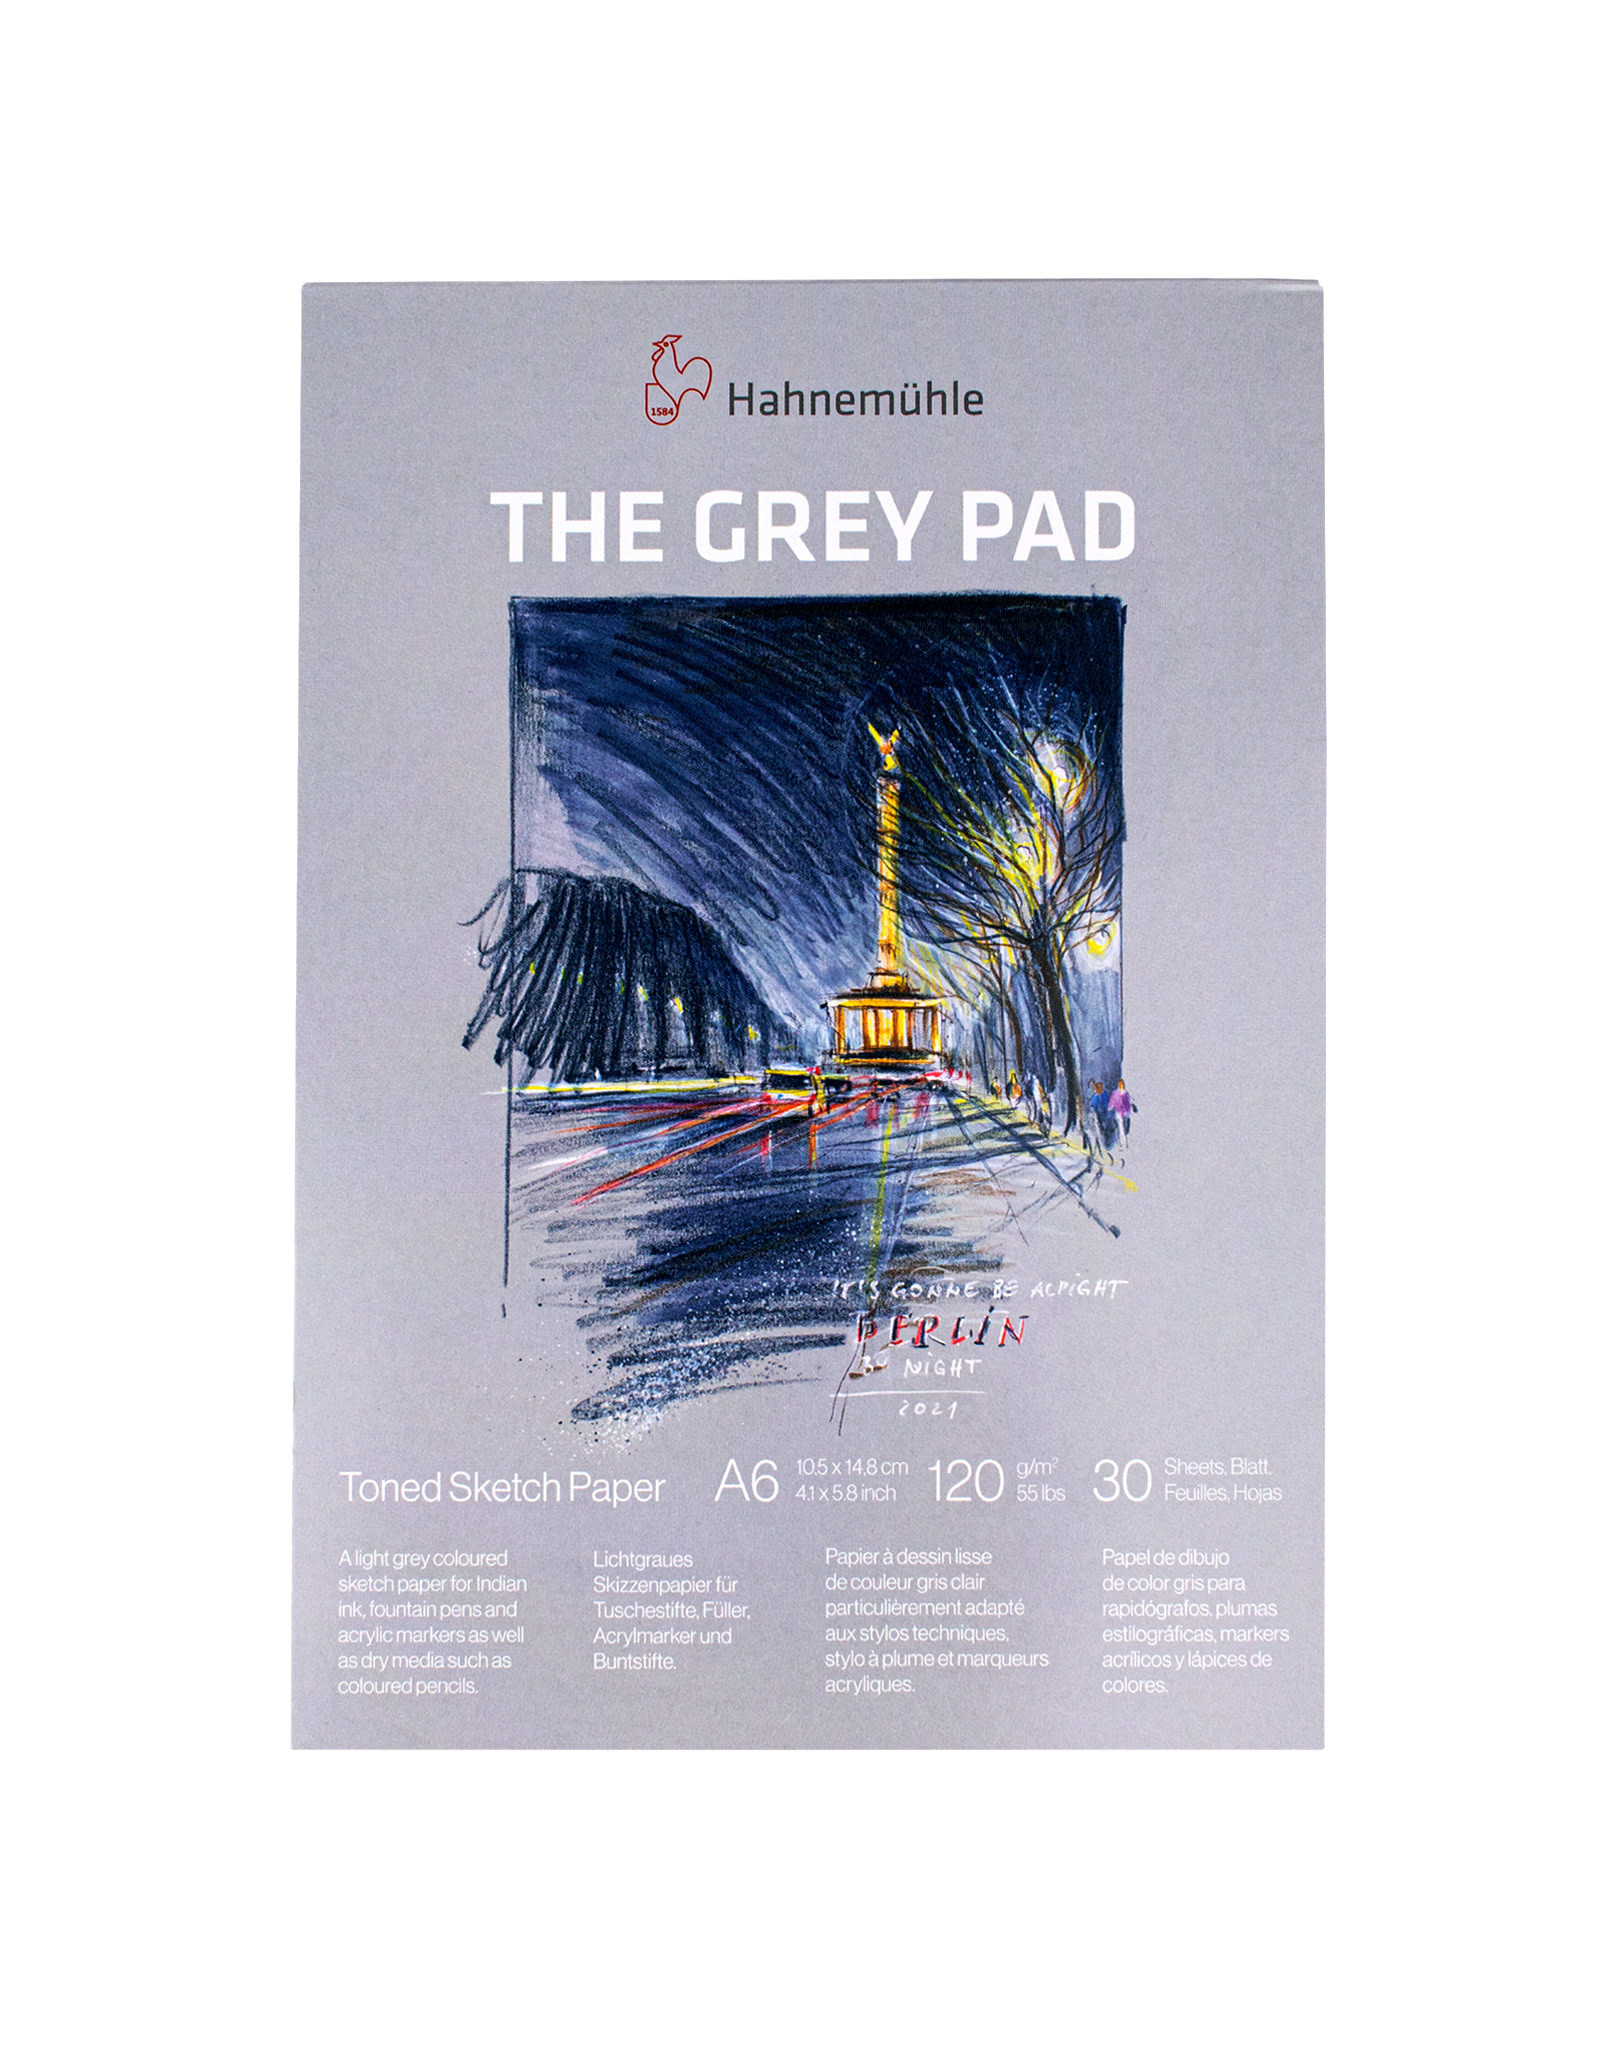 Hahnemuhle Hahnemuhle The Grey Pad, 10.5 cm x 14.8cm(4.1” x 5.8”)